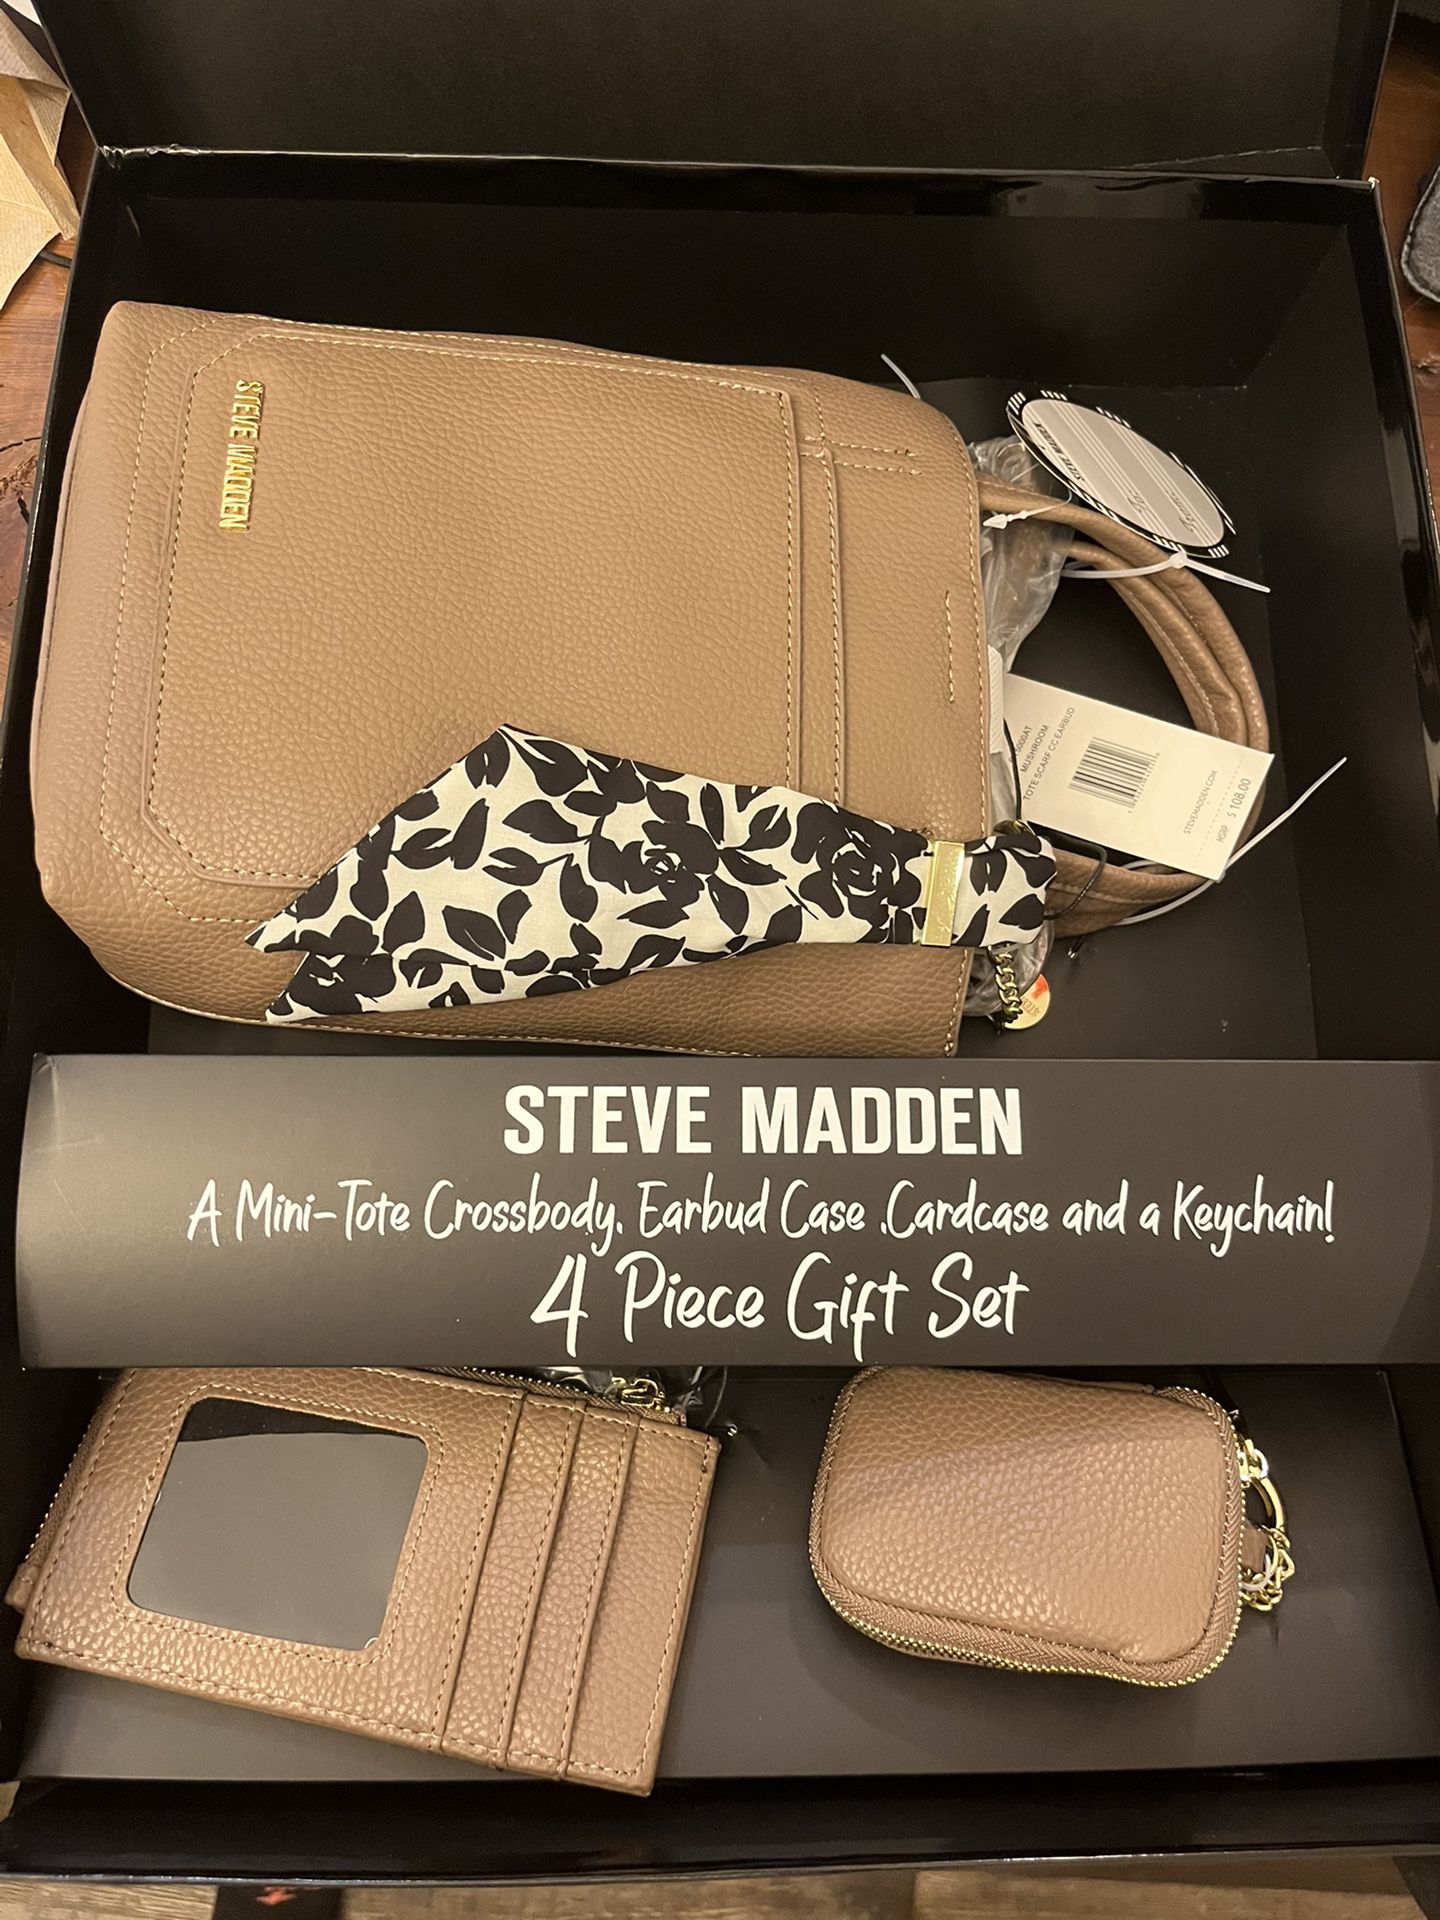 Steve Madden 4 Piece Gift Set